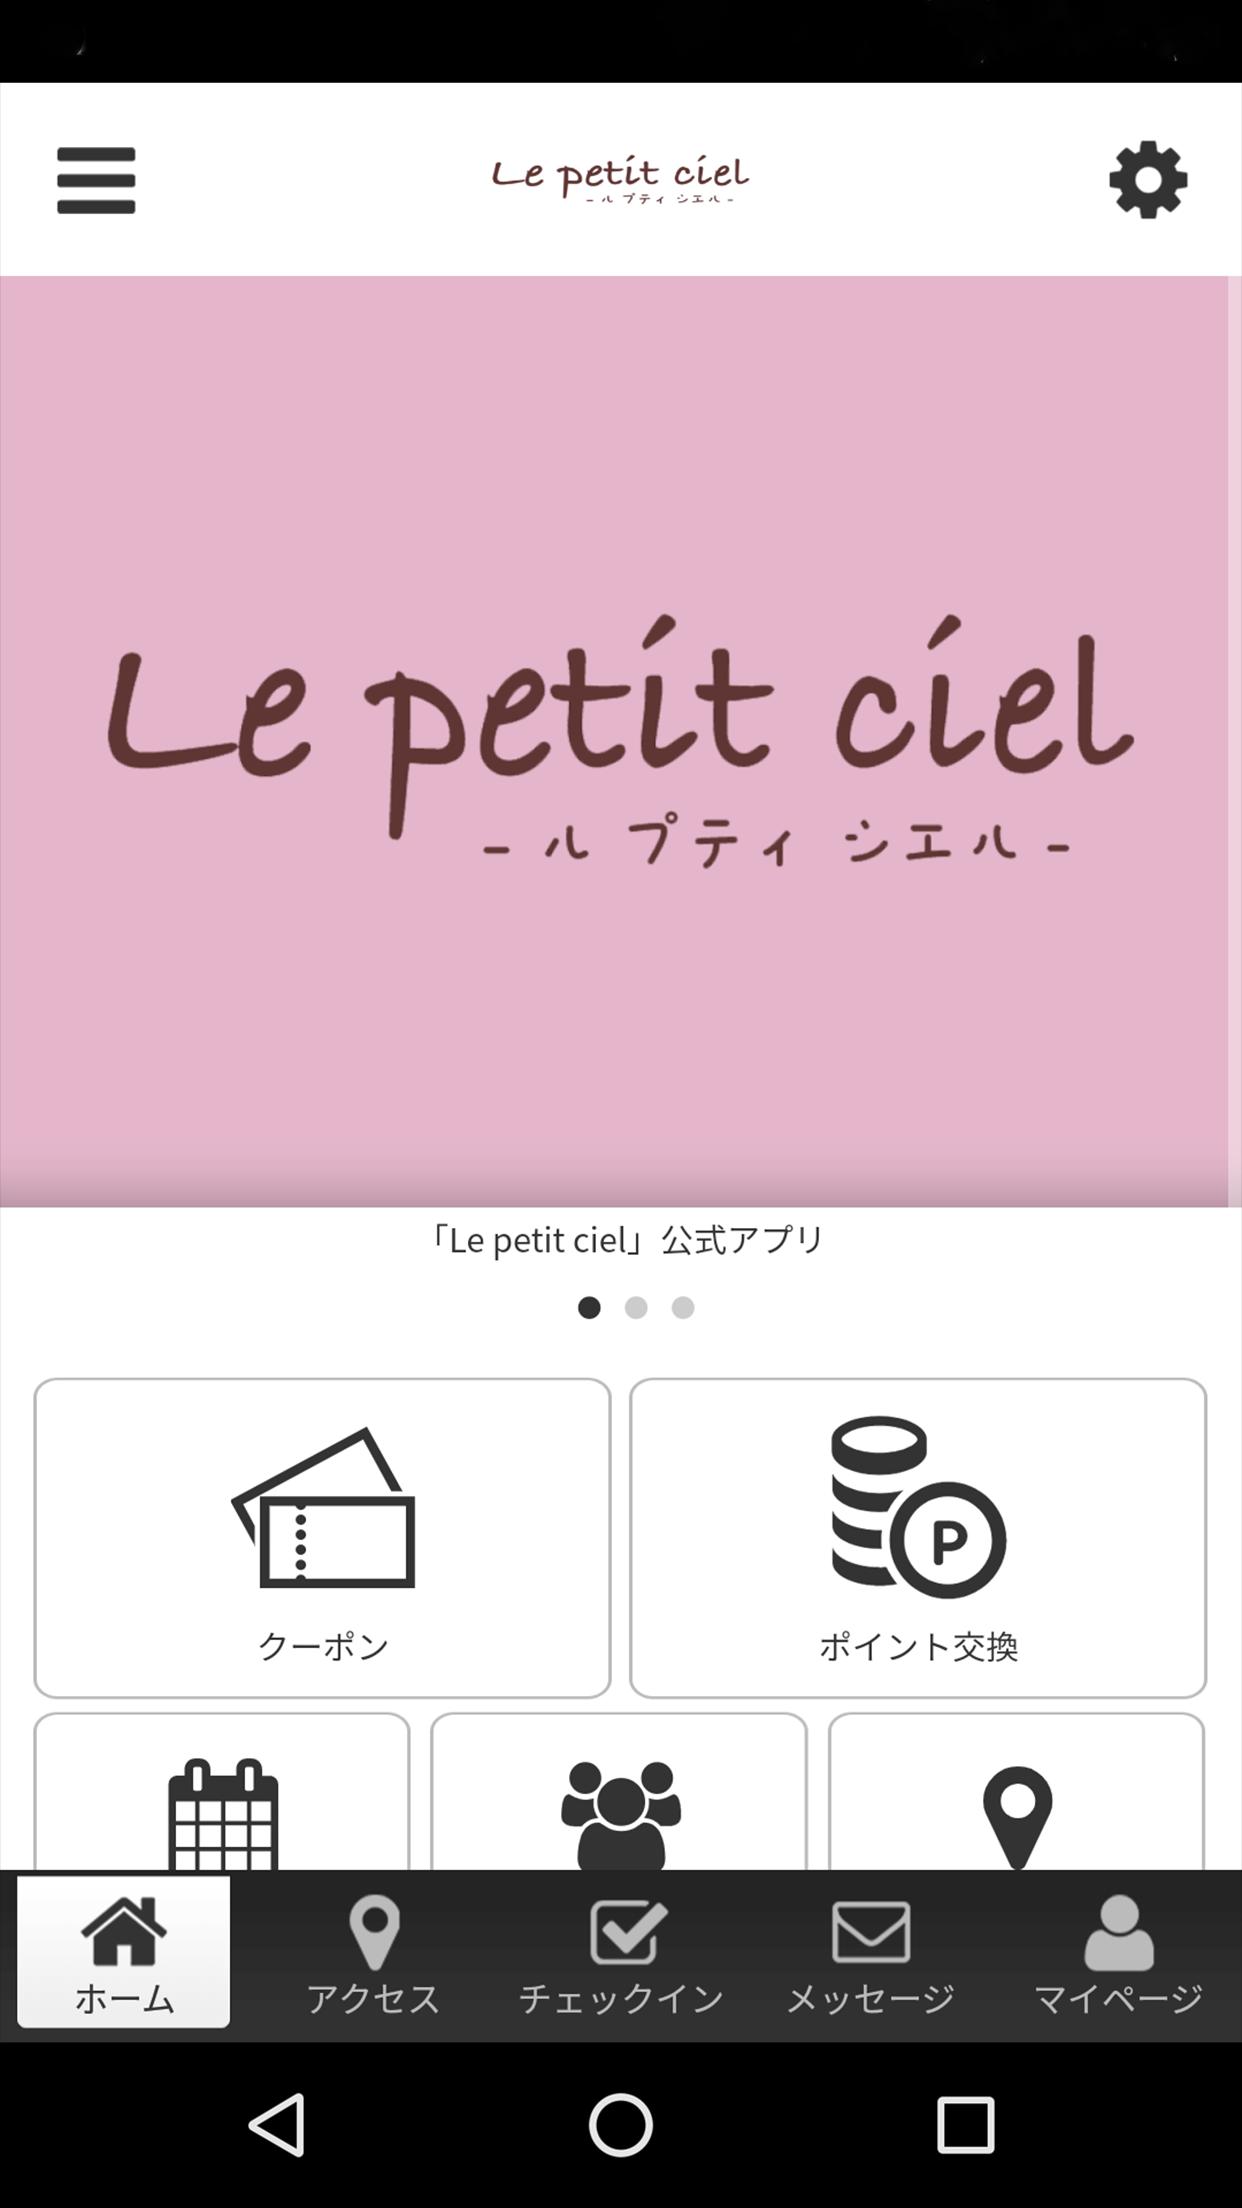 Le petit ciel -ル プティ シエル- 2.12.0 Screenshot 1